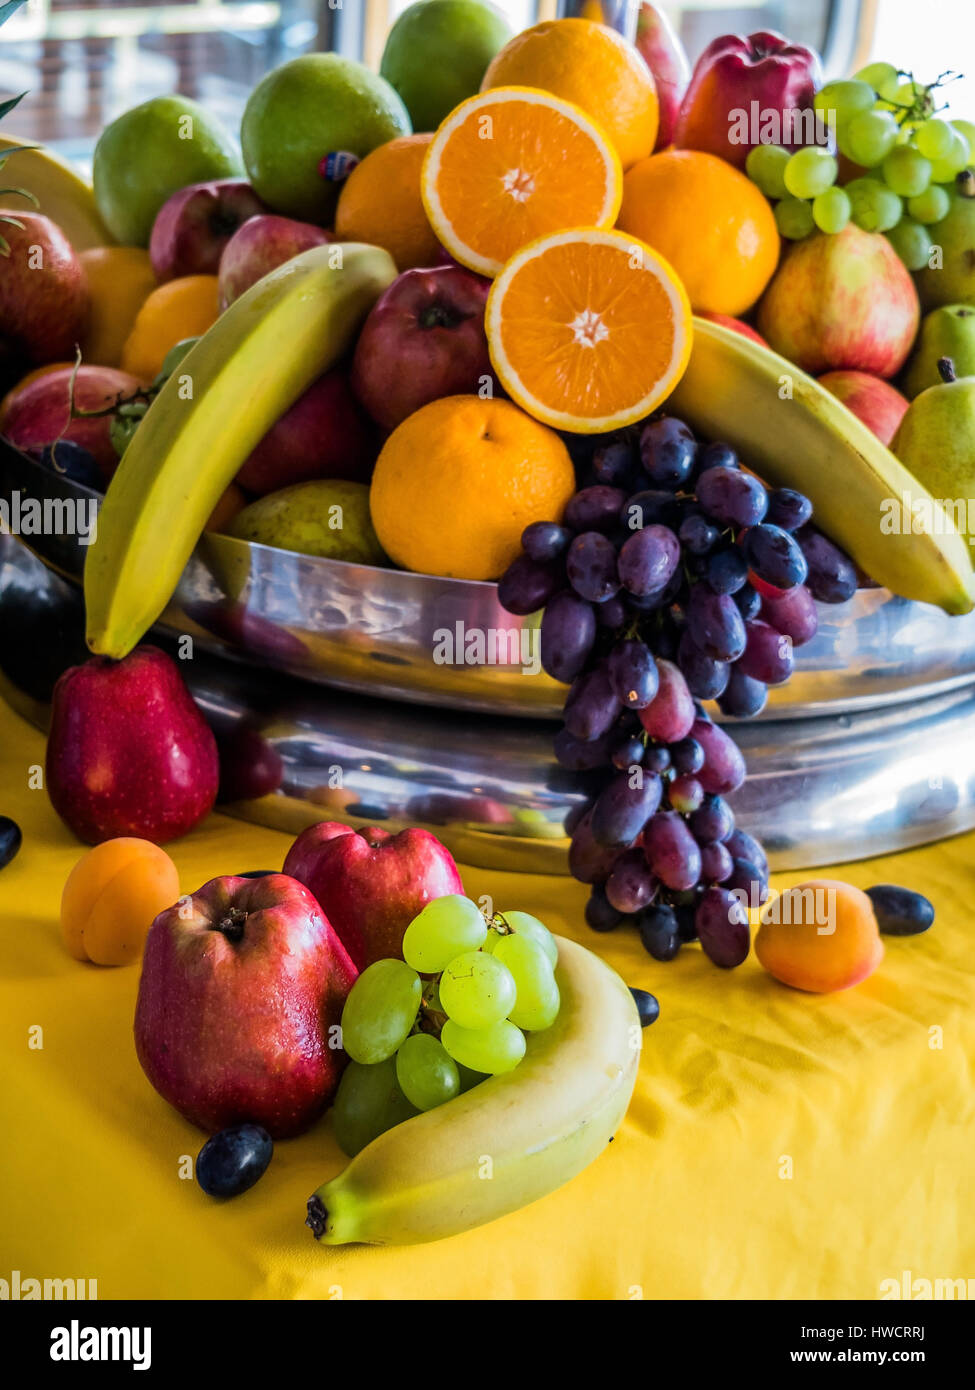 Basket with fresh fruit and vegetables, Korb mit frischem Obst und Gemüse Stock Photo